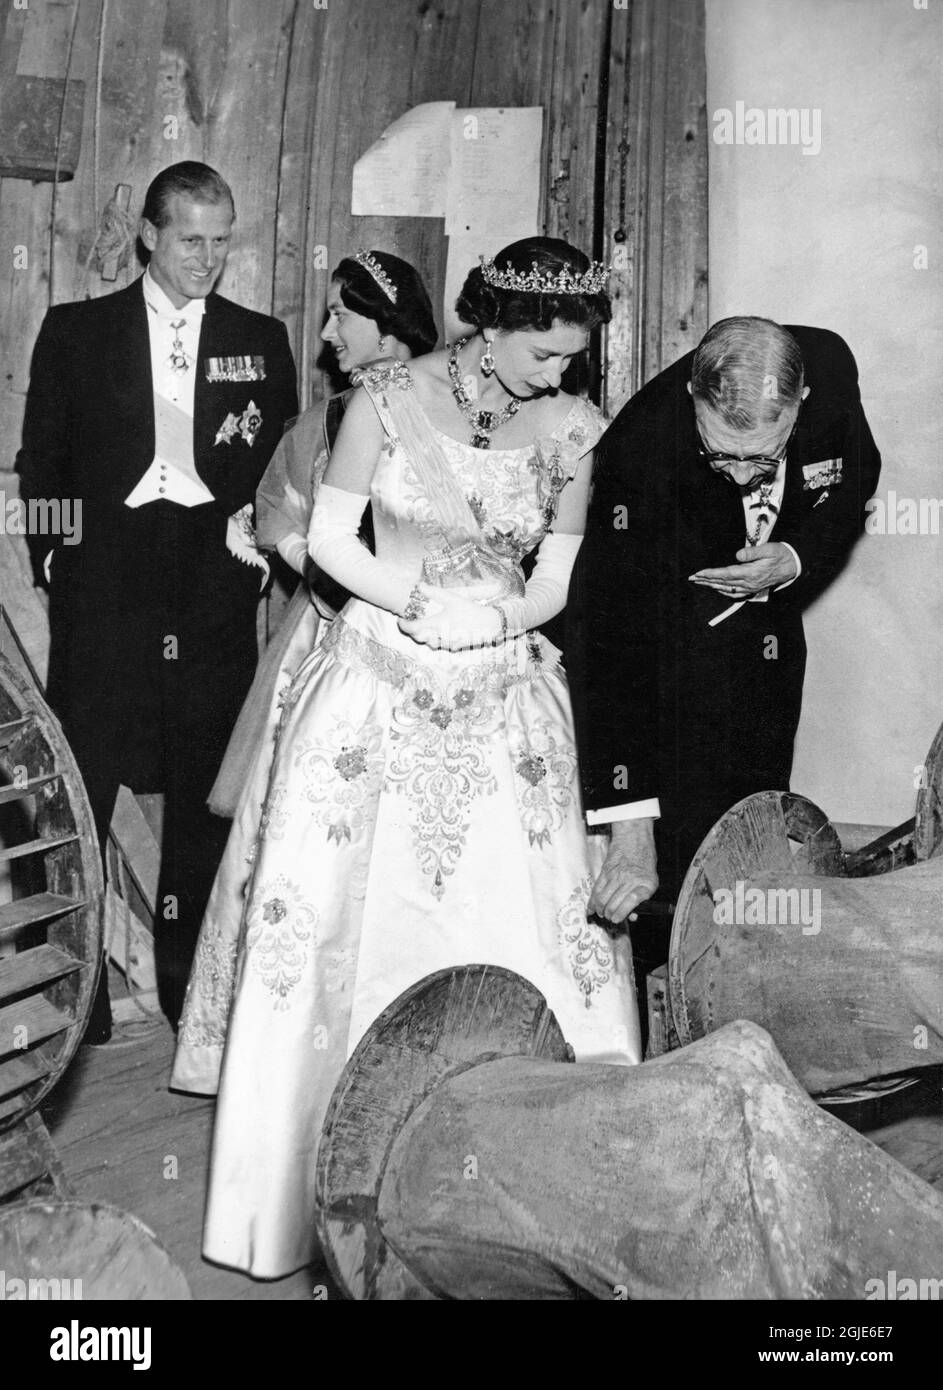 Prinz Philip, Prinzessin Margaret, Königin Elisabeth II. Und König Gustaf VI. Adolf von Schweden im Drottningholm Palace Theatre während des Staatsbesuchs der Königin in Schweden am 14. Juni 1956. Foto: Aftonbladet / TT-Code 2512 Stockfoto